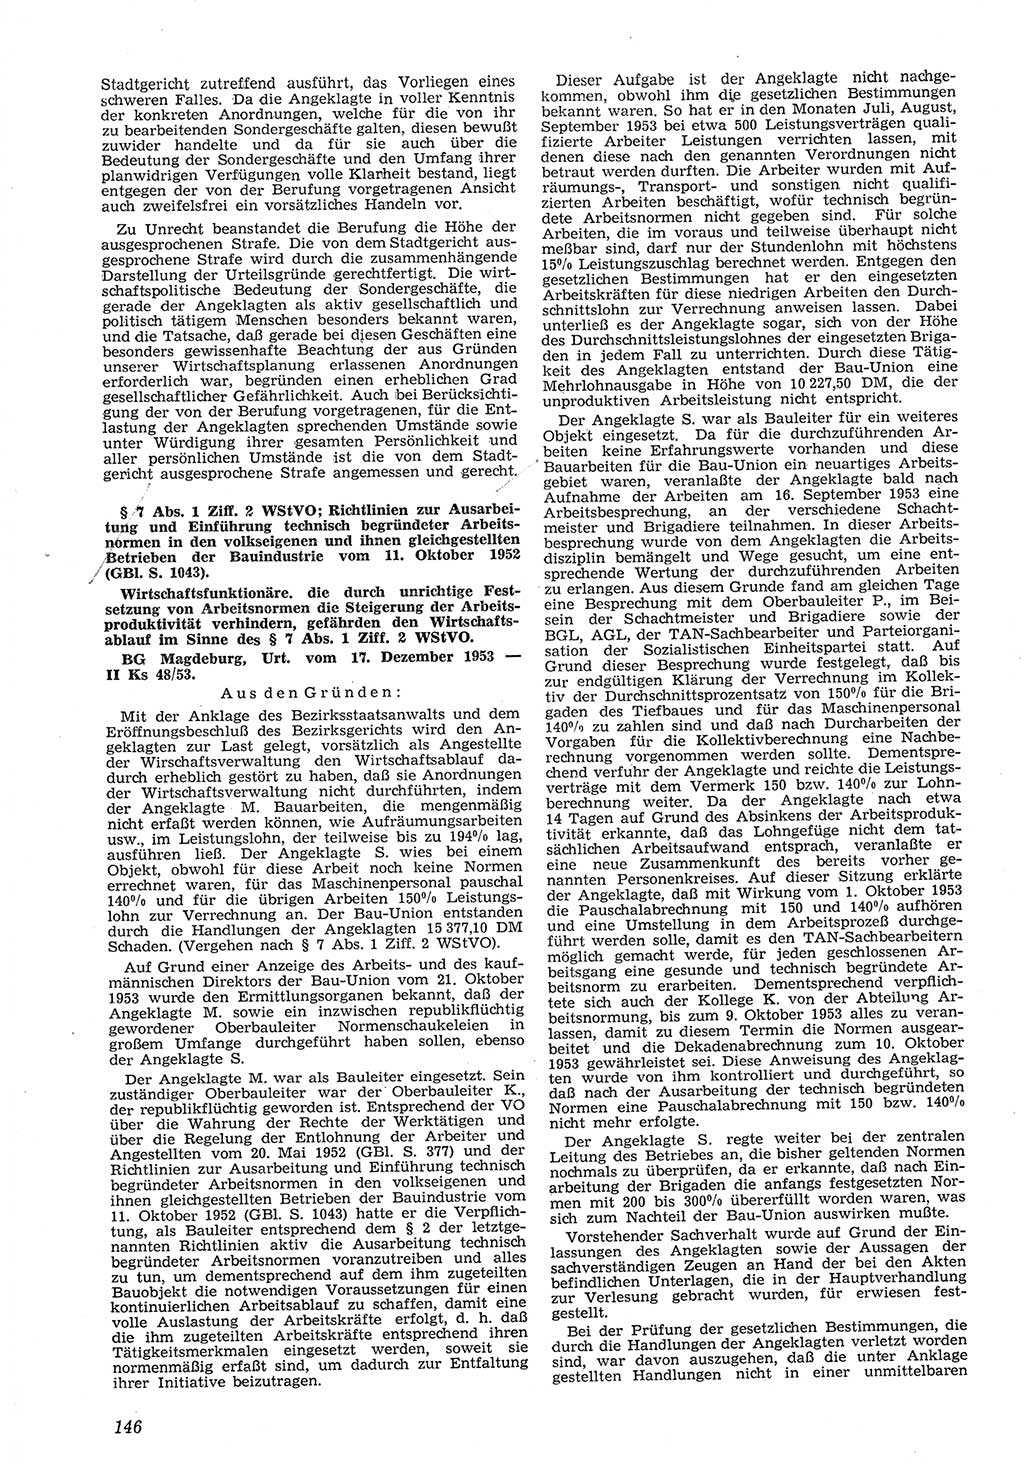 Neue Justiz (NJ), Zeitschrift für Recht und Rechtswissenschaft [Deutsche Demokratische Republik (DDR)], 8. Jahrgang 1954, Seite 146 (NJ DDR 1954, S. 146)